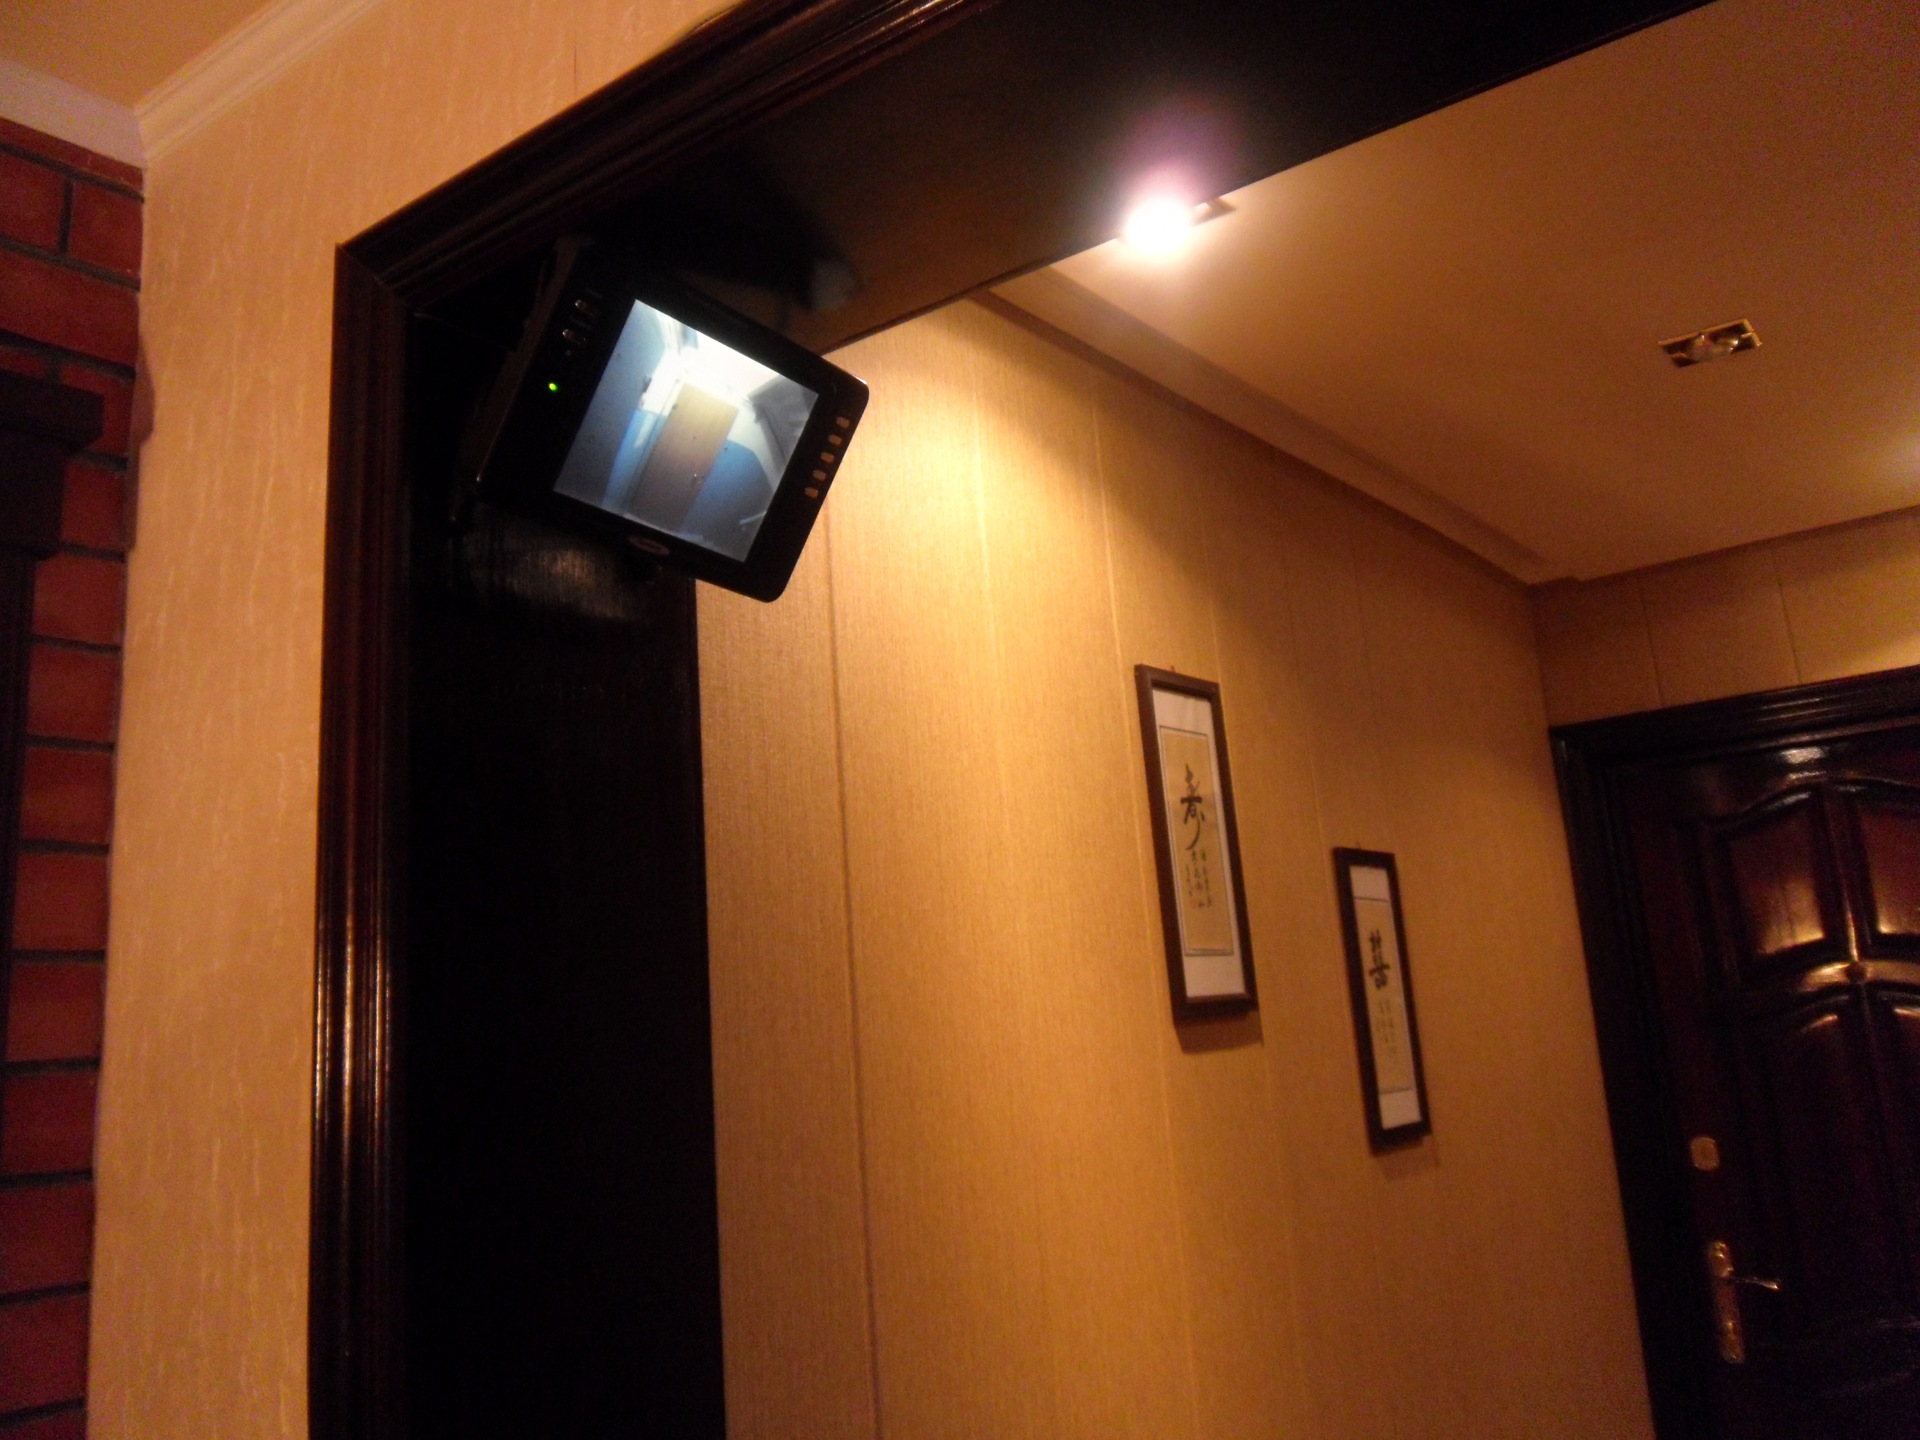 Установить глазок дверь. Видеоглазок для входной двери. Камера видеонаблюдения над входной дверью. Камера на входную дверь в квартиру. Дверной видеоглазок с монитором.